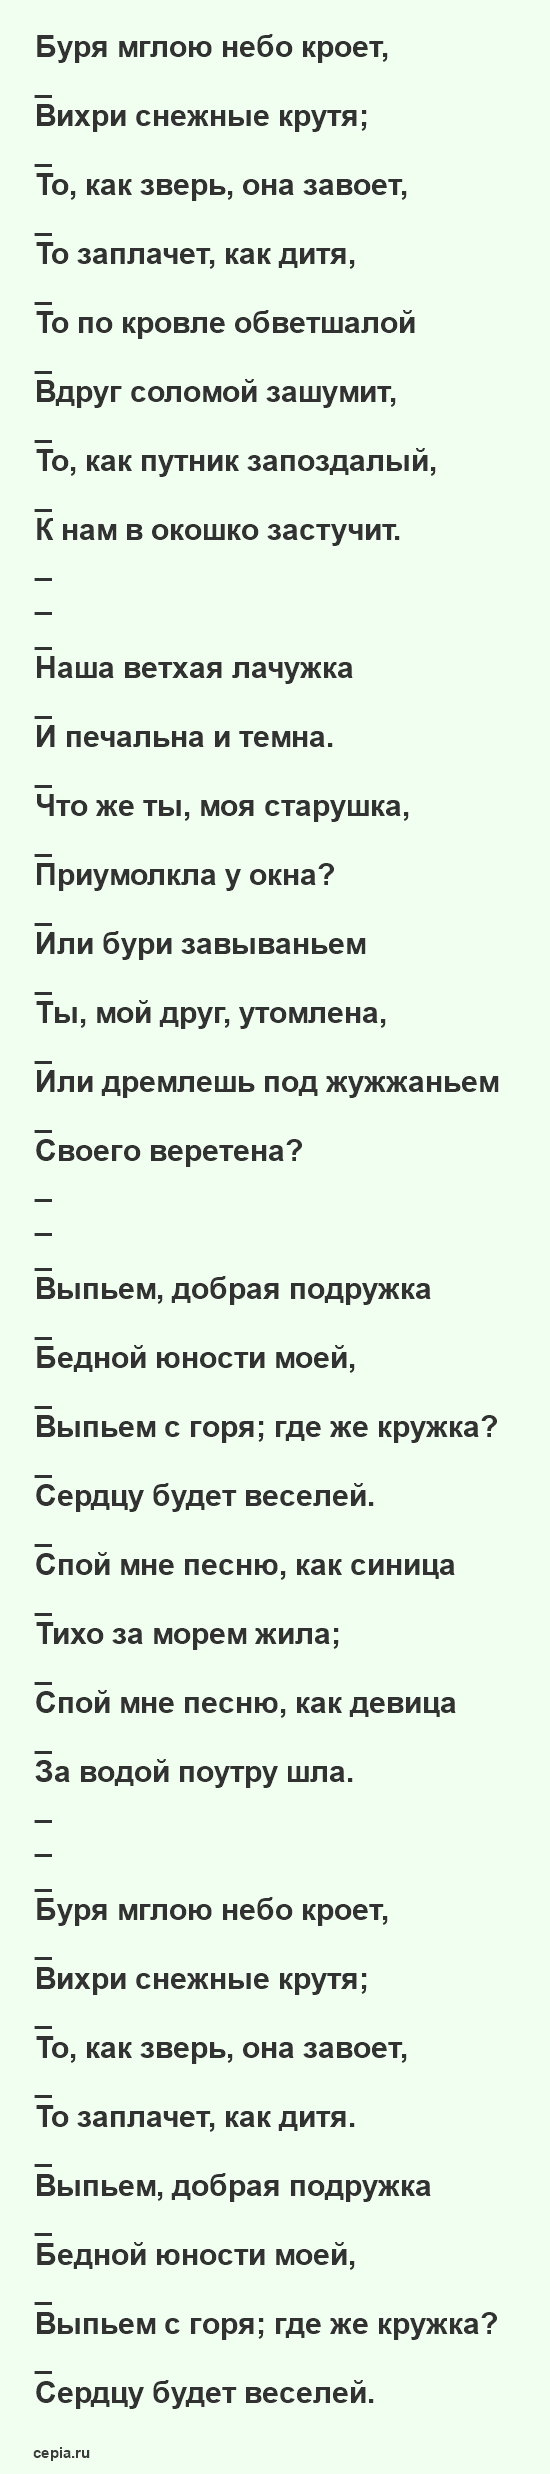 Стихи Пушкина для детей 3 класса - Зимний вечер